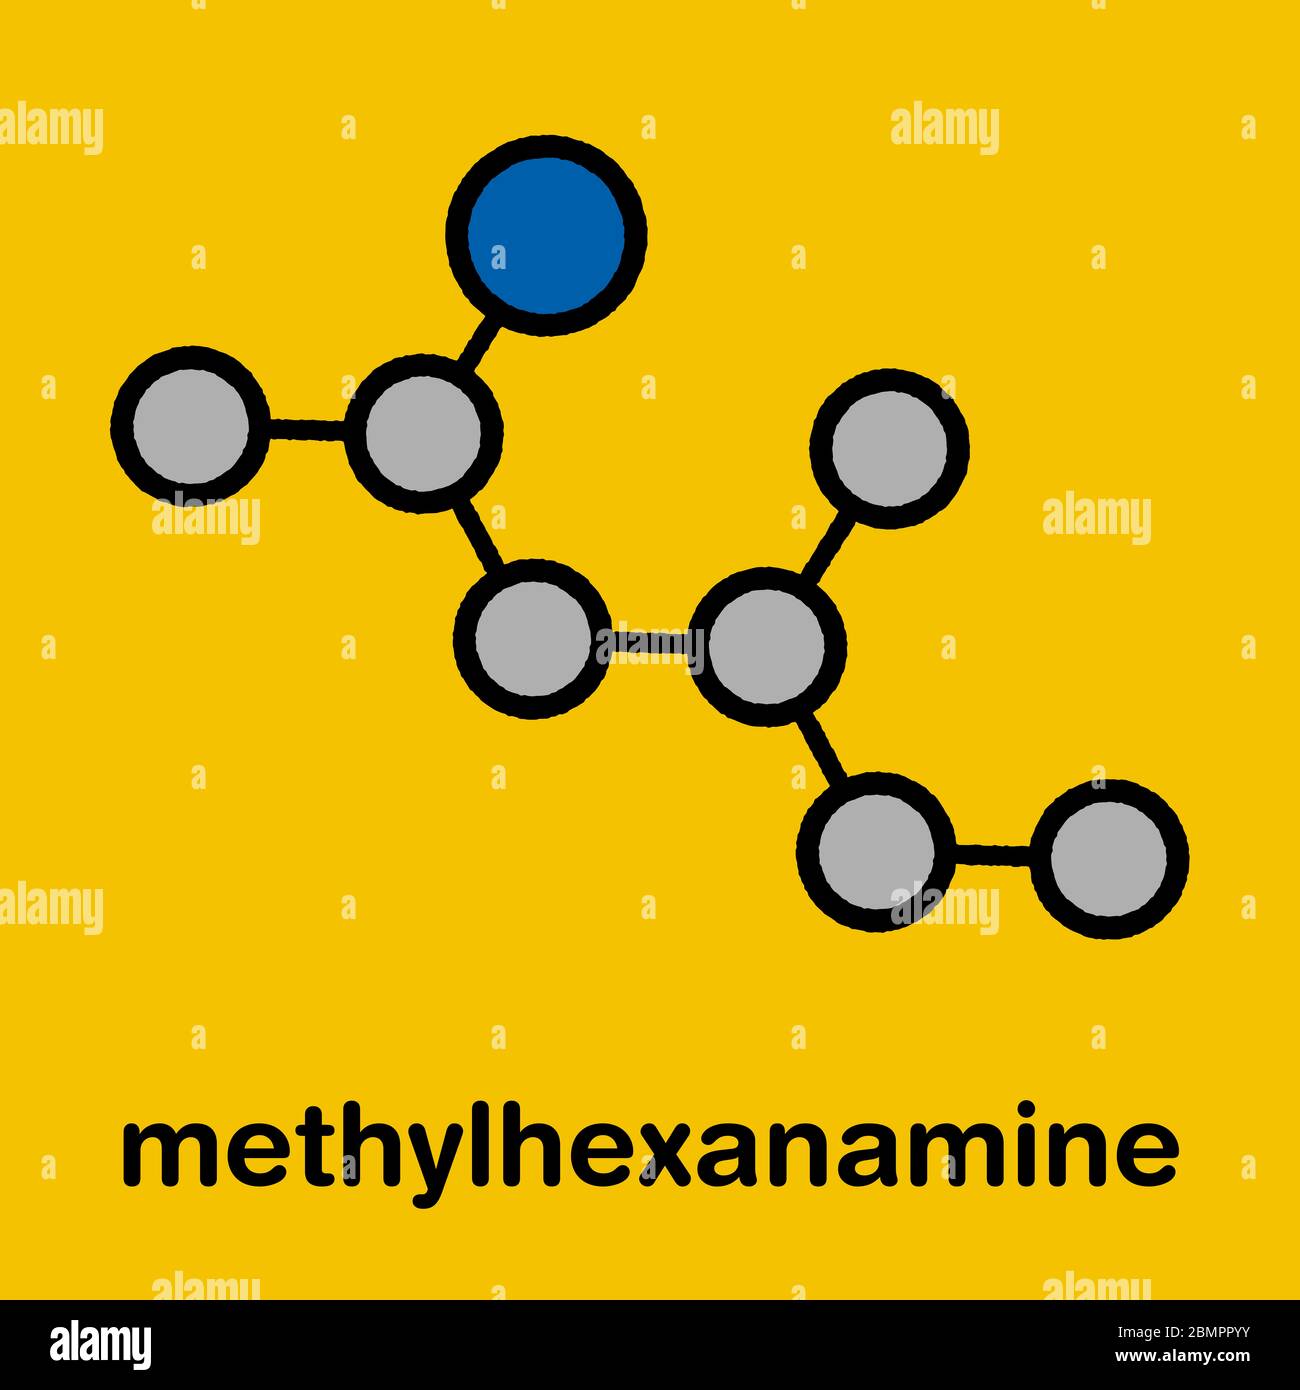 Methylhexanamine (1,3-dimethylamylamine, DMAA) stimulant drug, chemical structure. Stock Photo